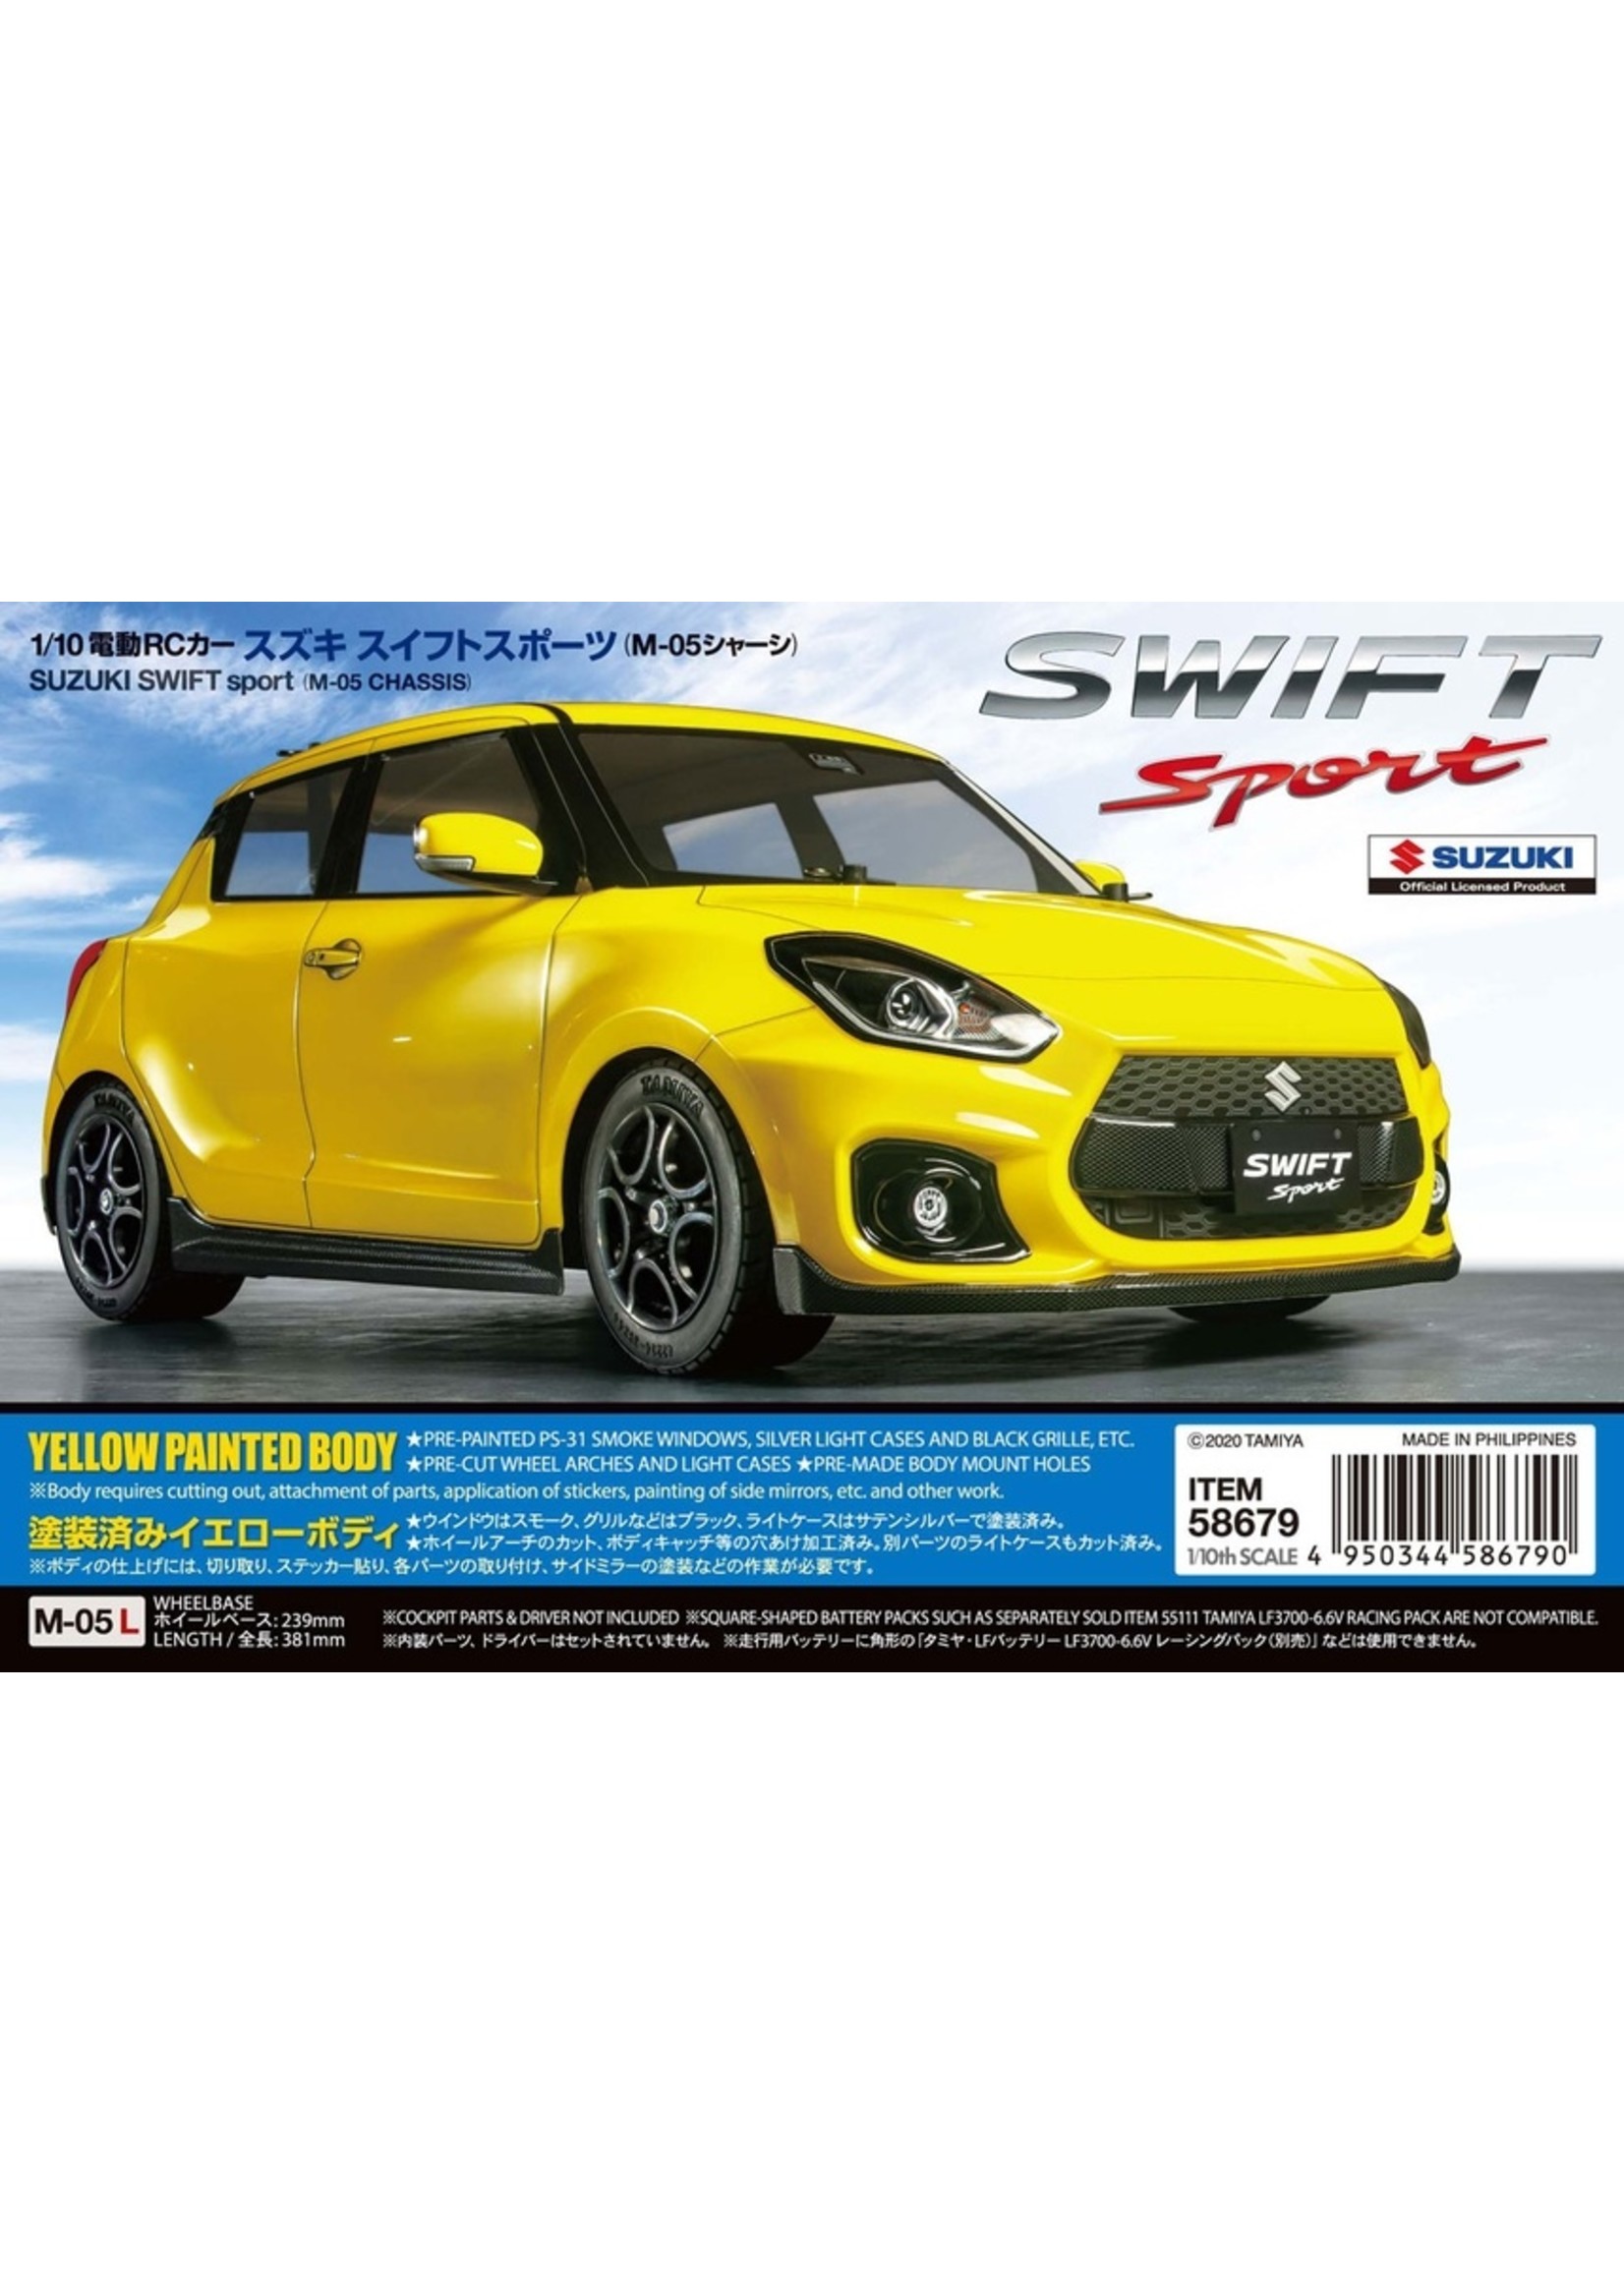 Tamiya 1/10 Suzuki Swift Sport - M-05 Chassis Kit